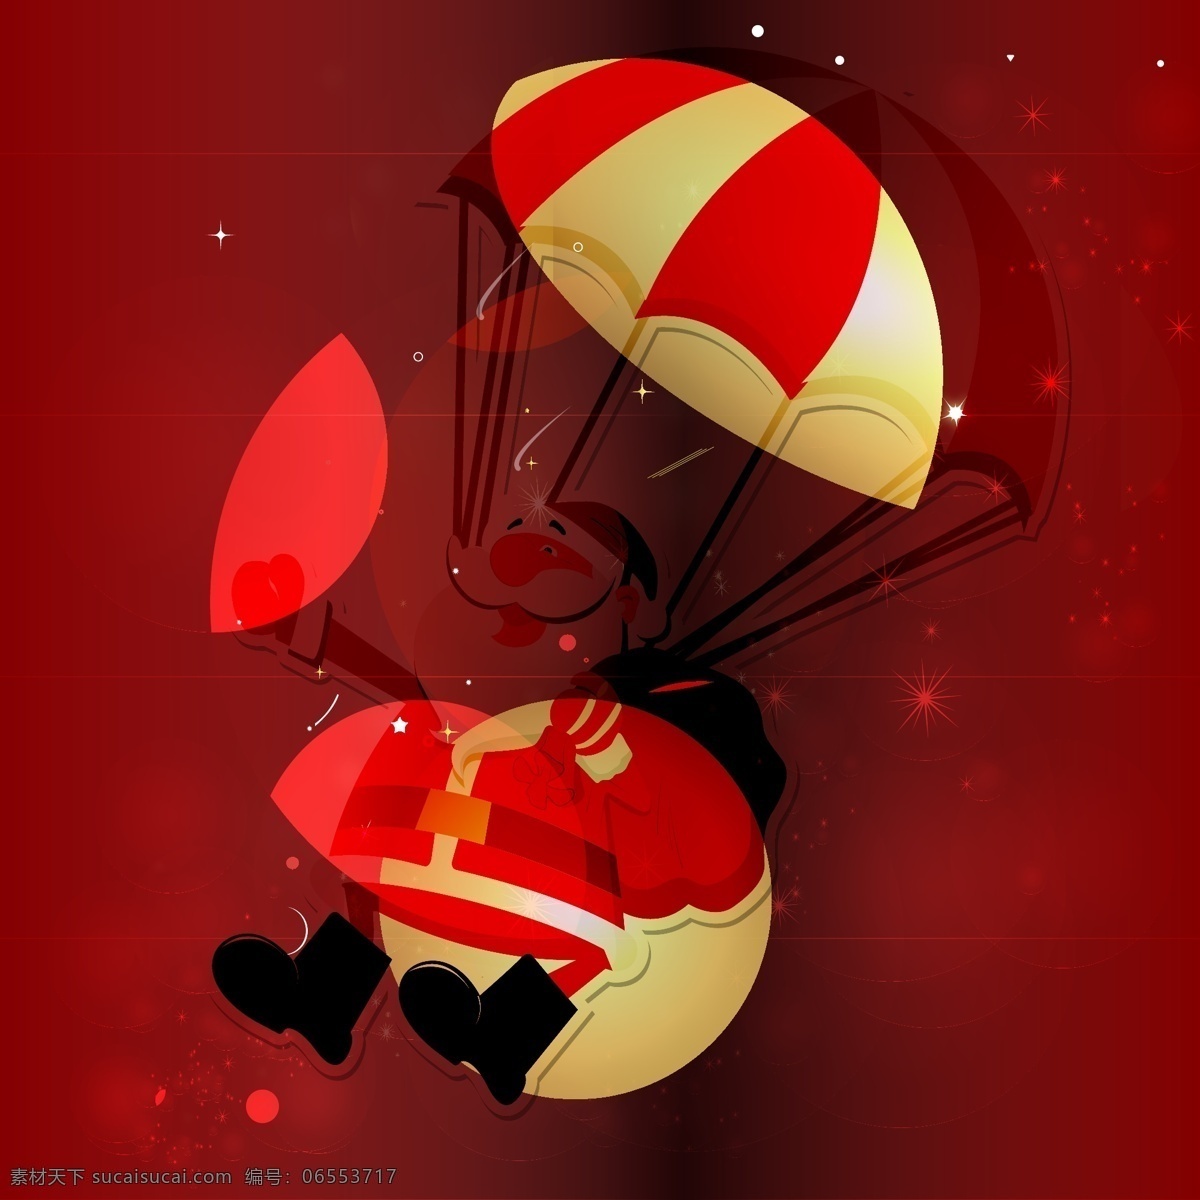 圣诞老人 矢量 红色 降落伞 矢量素材 设计素材